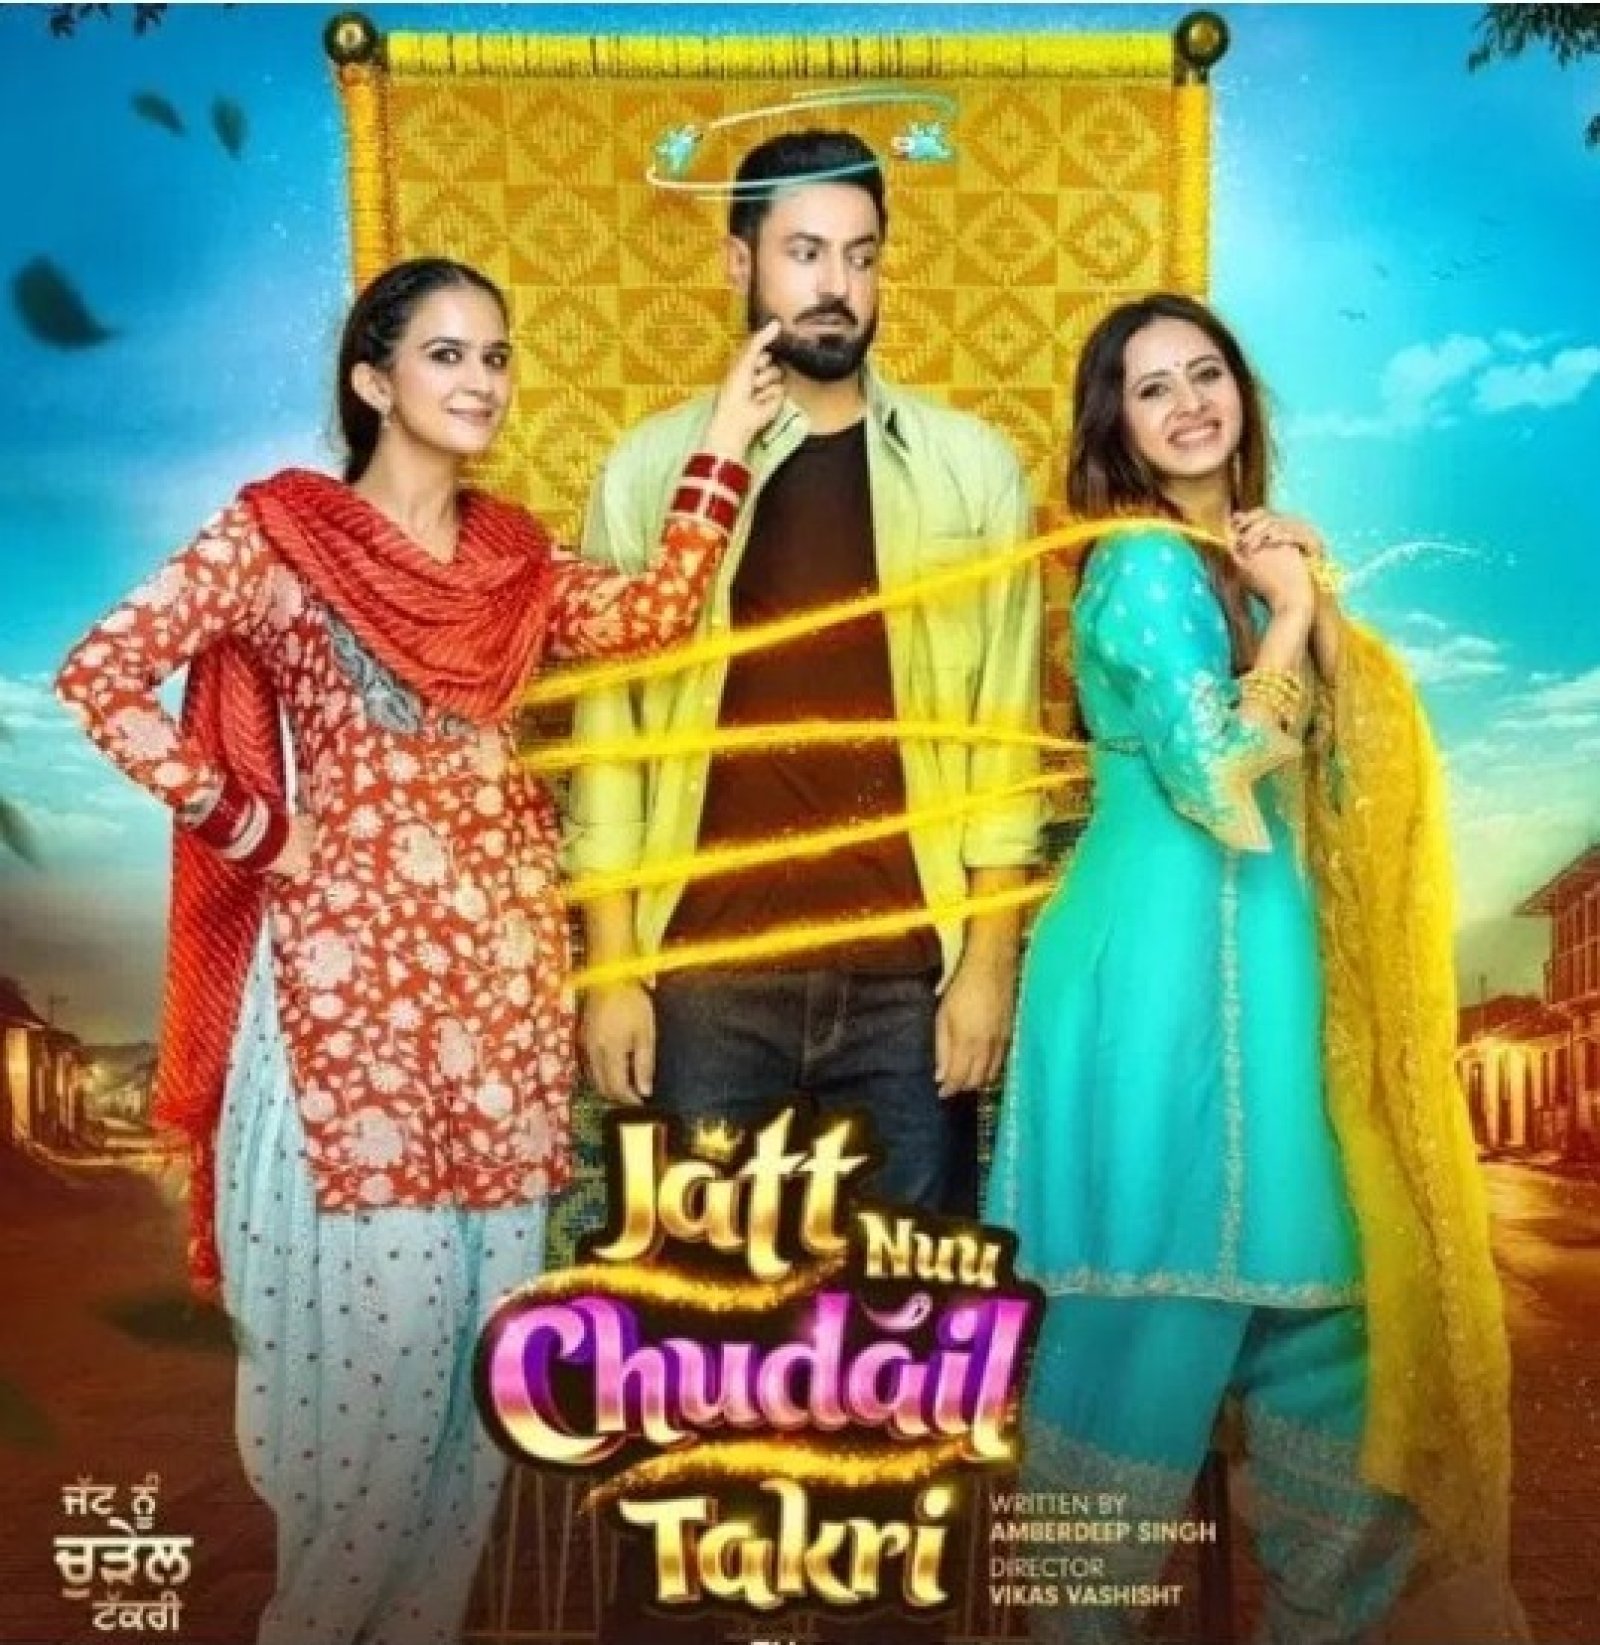 रोमांटिक कॉमेडी पंजाबी फिल्म 'जट्ट नुउ चुडैल टाकरी' का मुंबई में होगा शानदार प्रीमियर